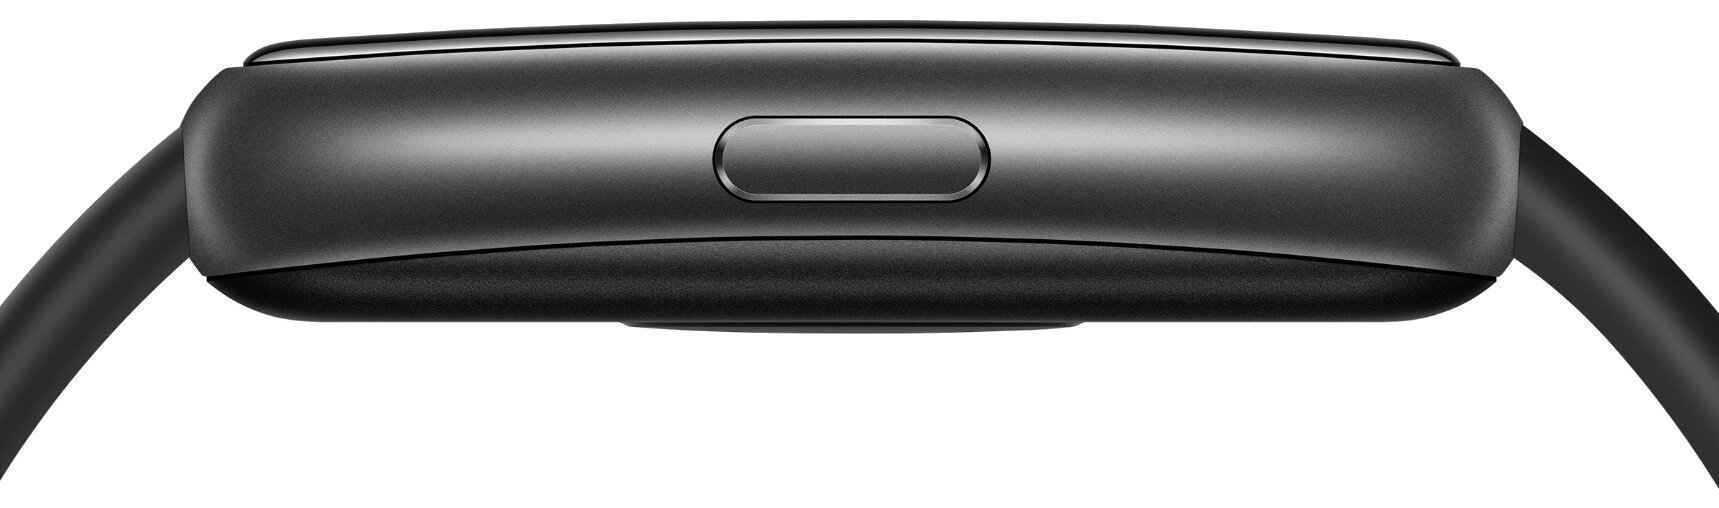 Фитнес браслет Huawei Band 7 (графитовый черный)